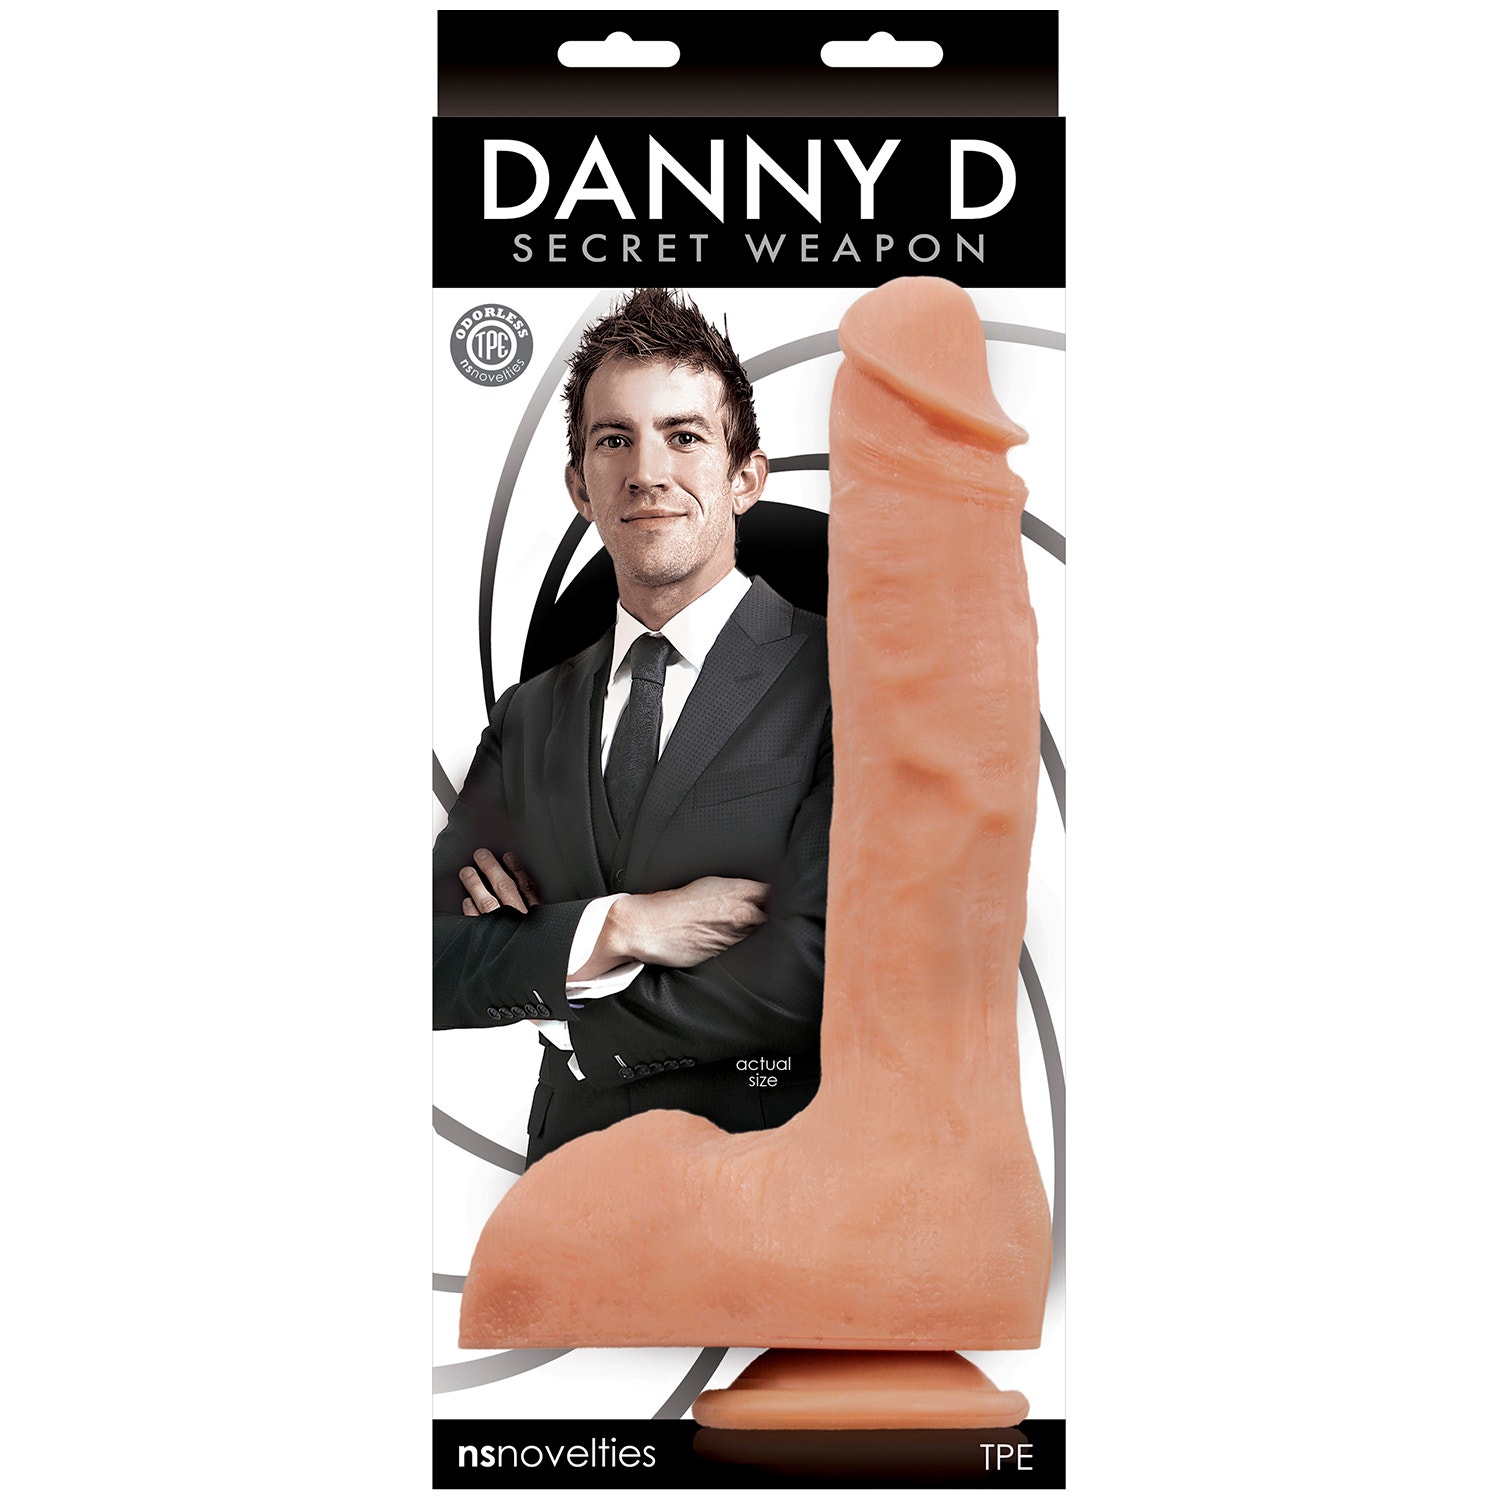 Best of Danny d penis size